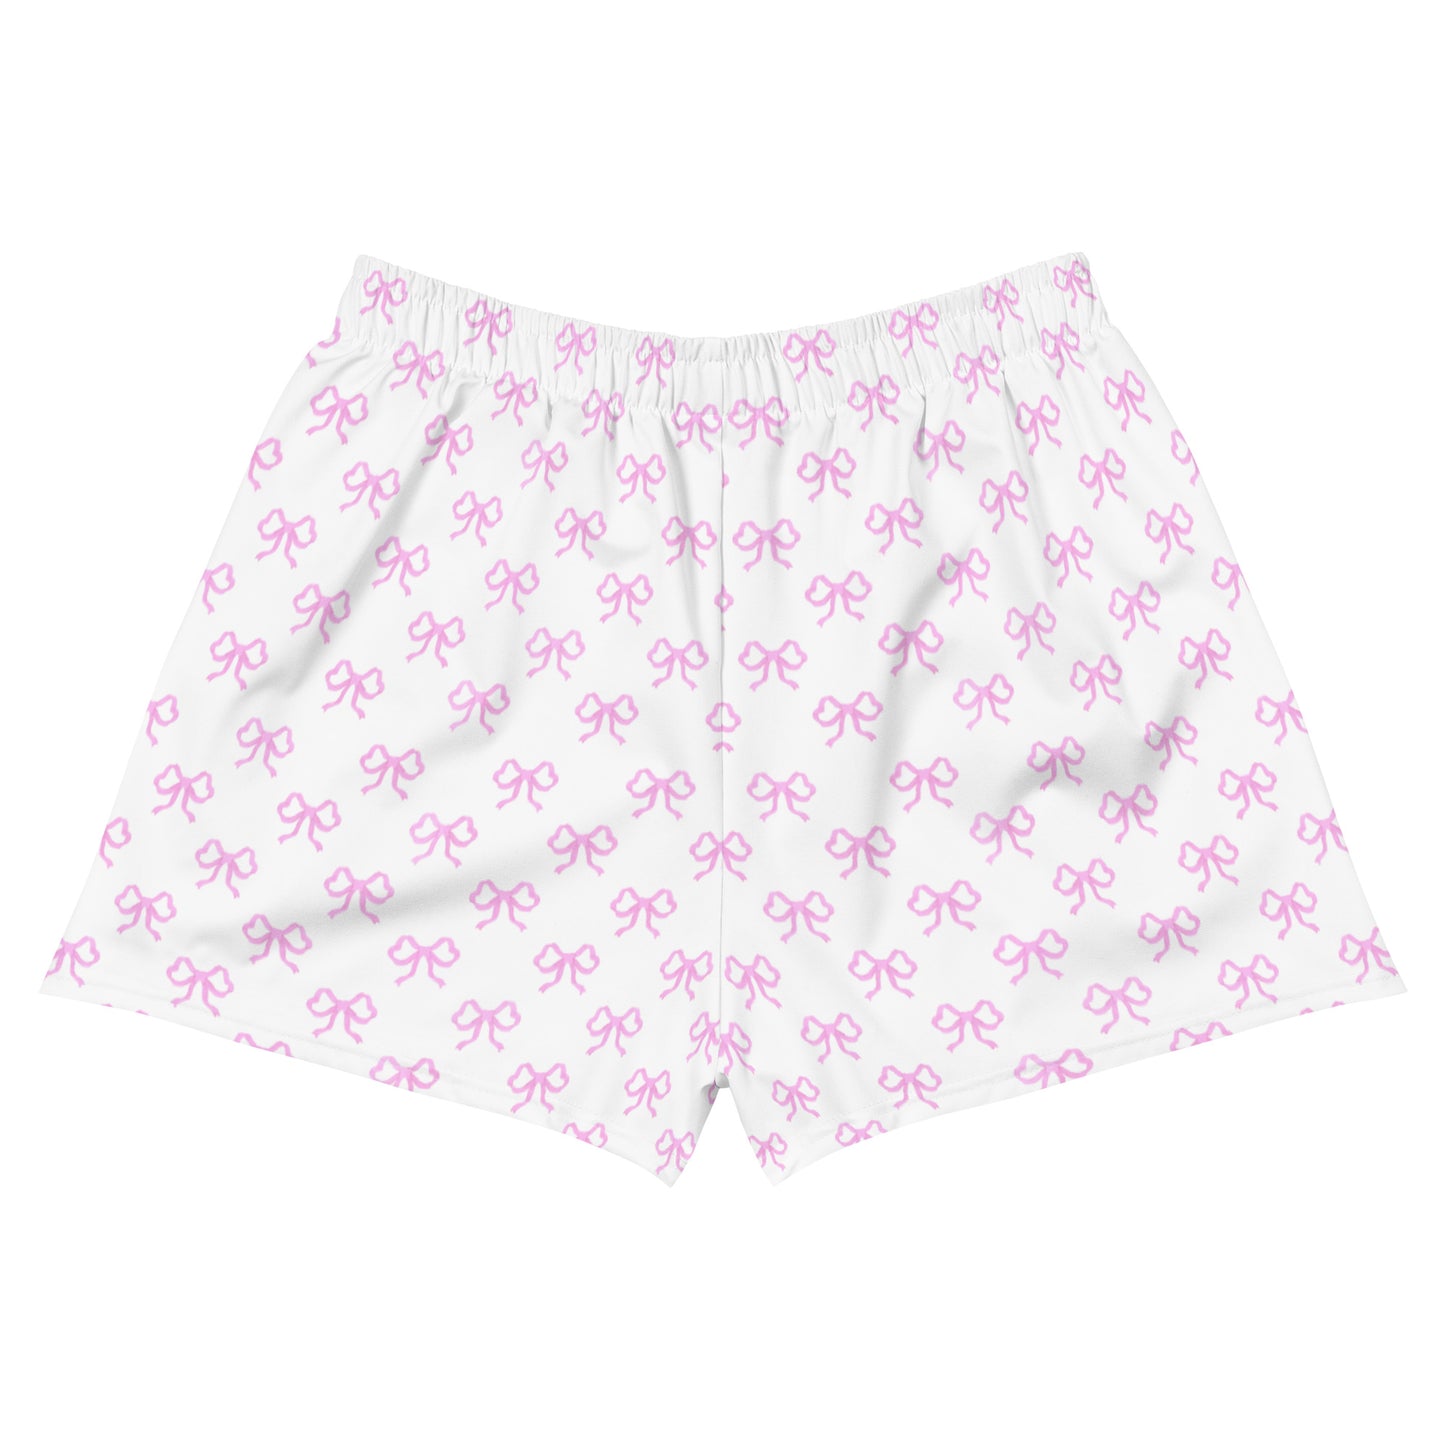 Pink Bow Shorts